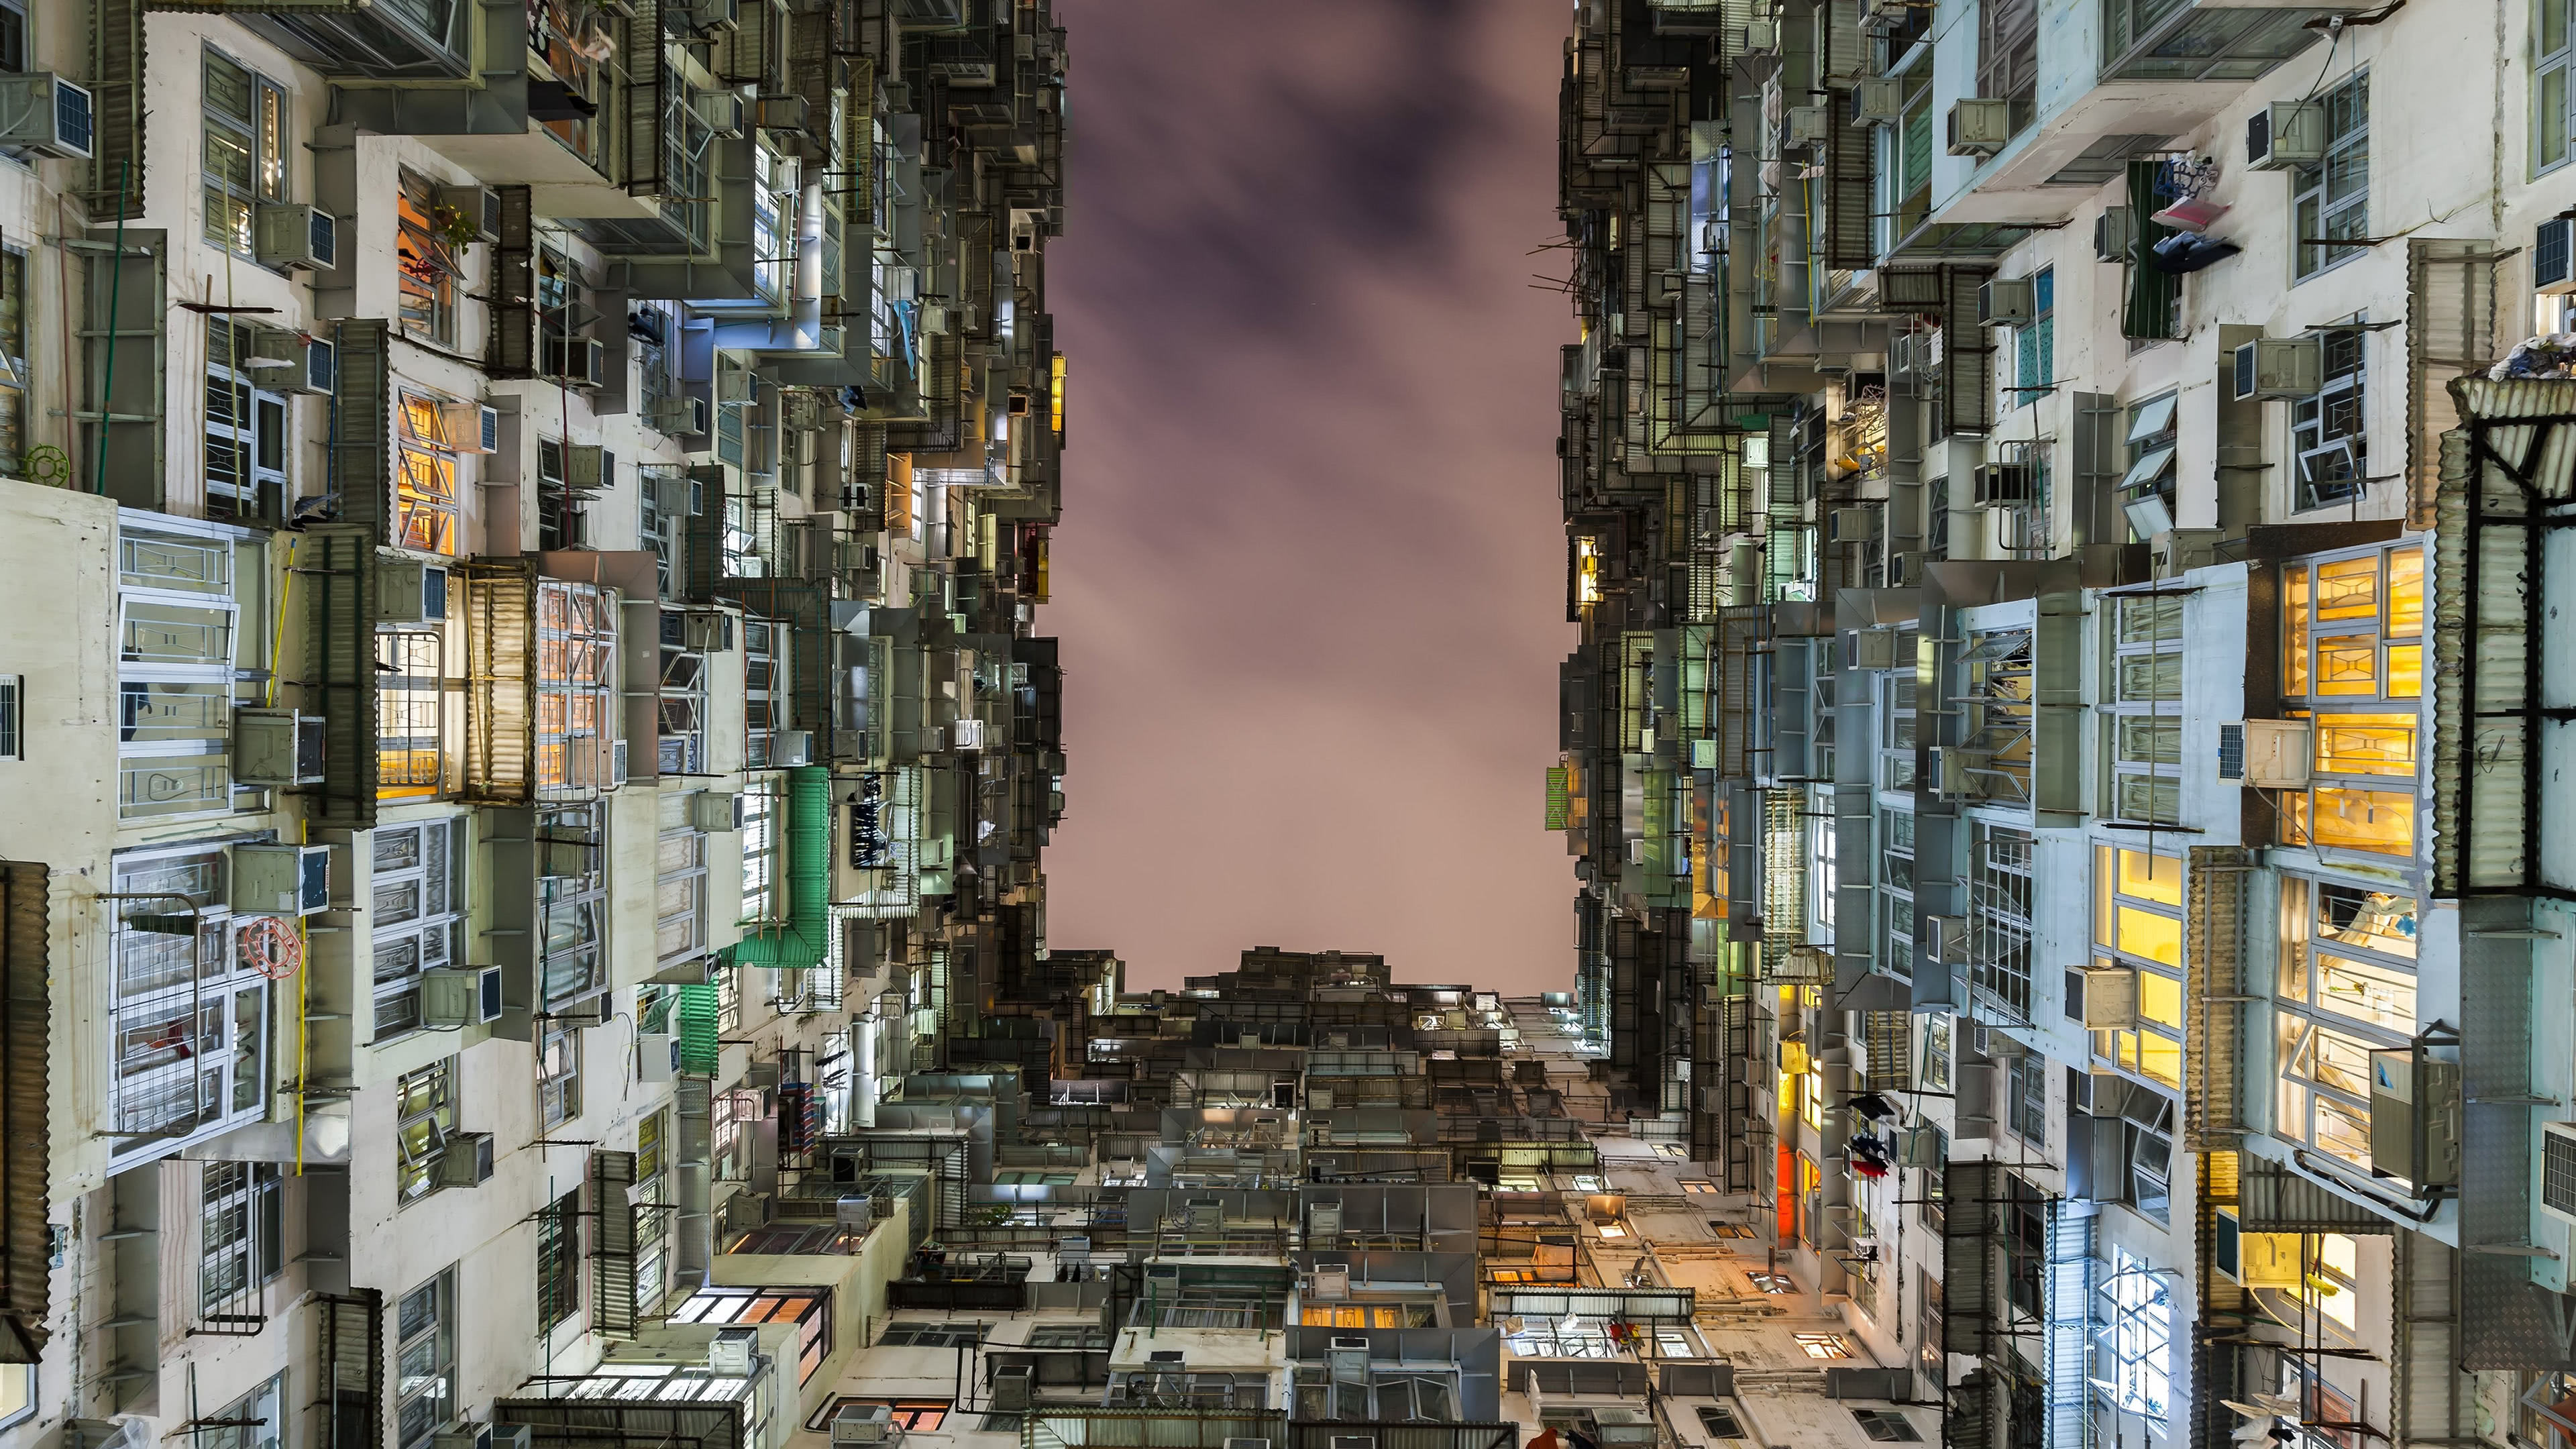 Living In A Box Condos Hong Kong China Uhd 4k Wallpaper - Hong Kong Apartment Cages - HD Wallpaper 